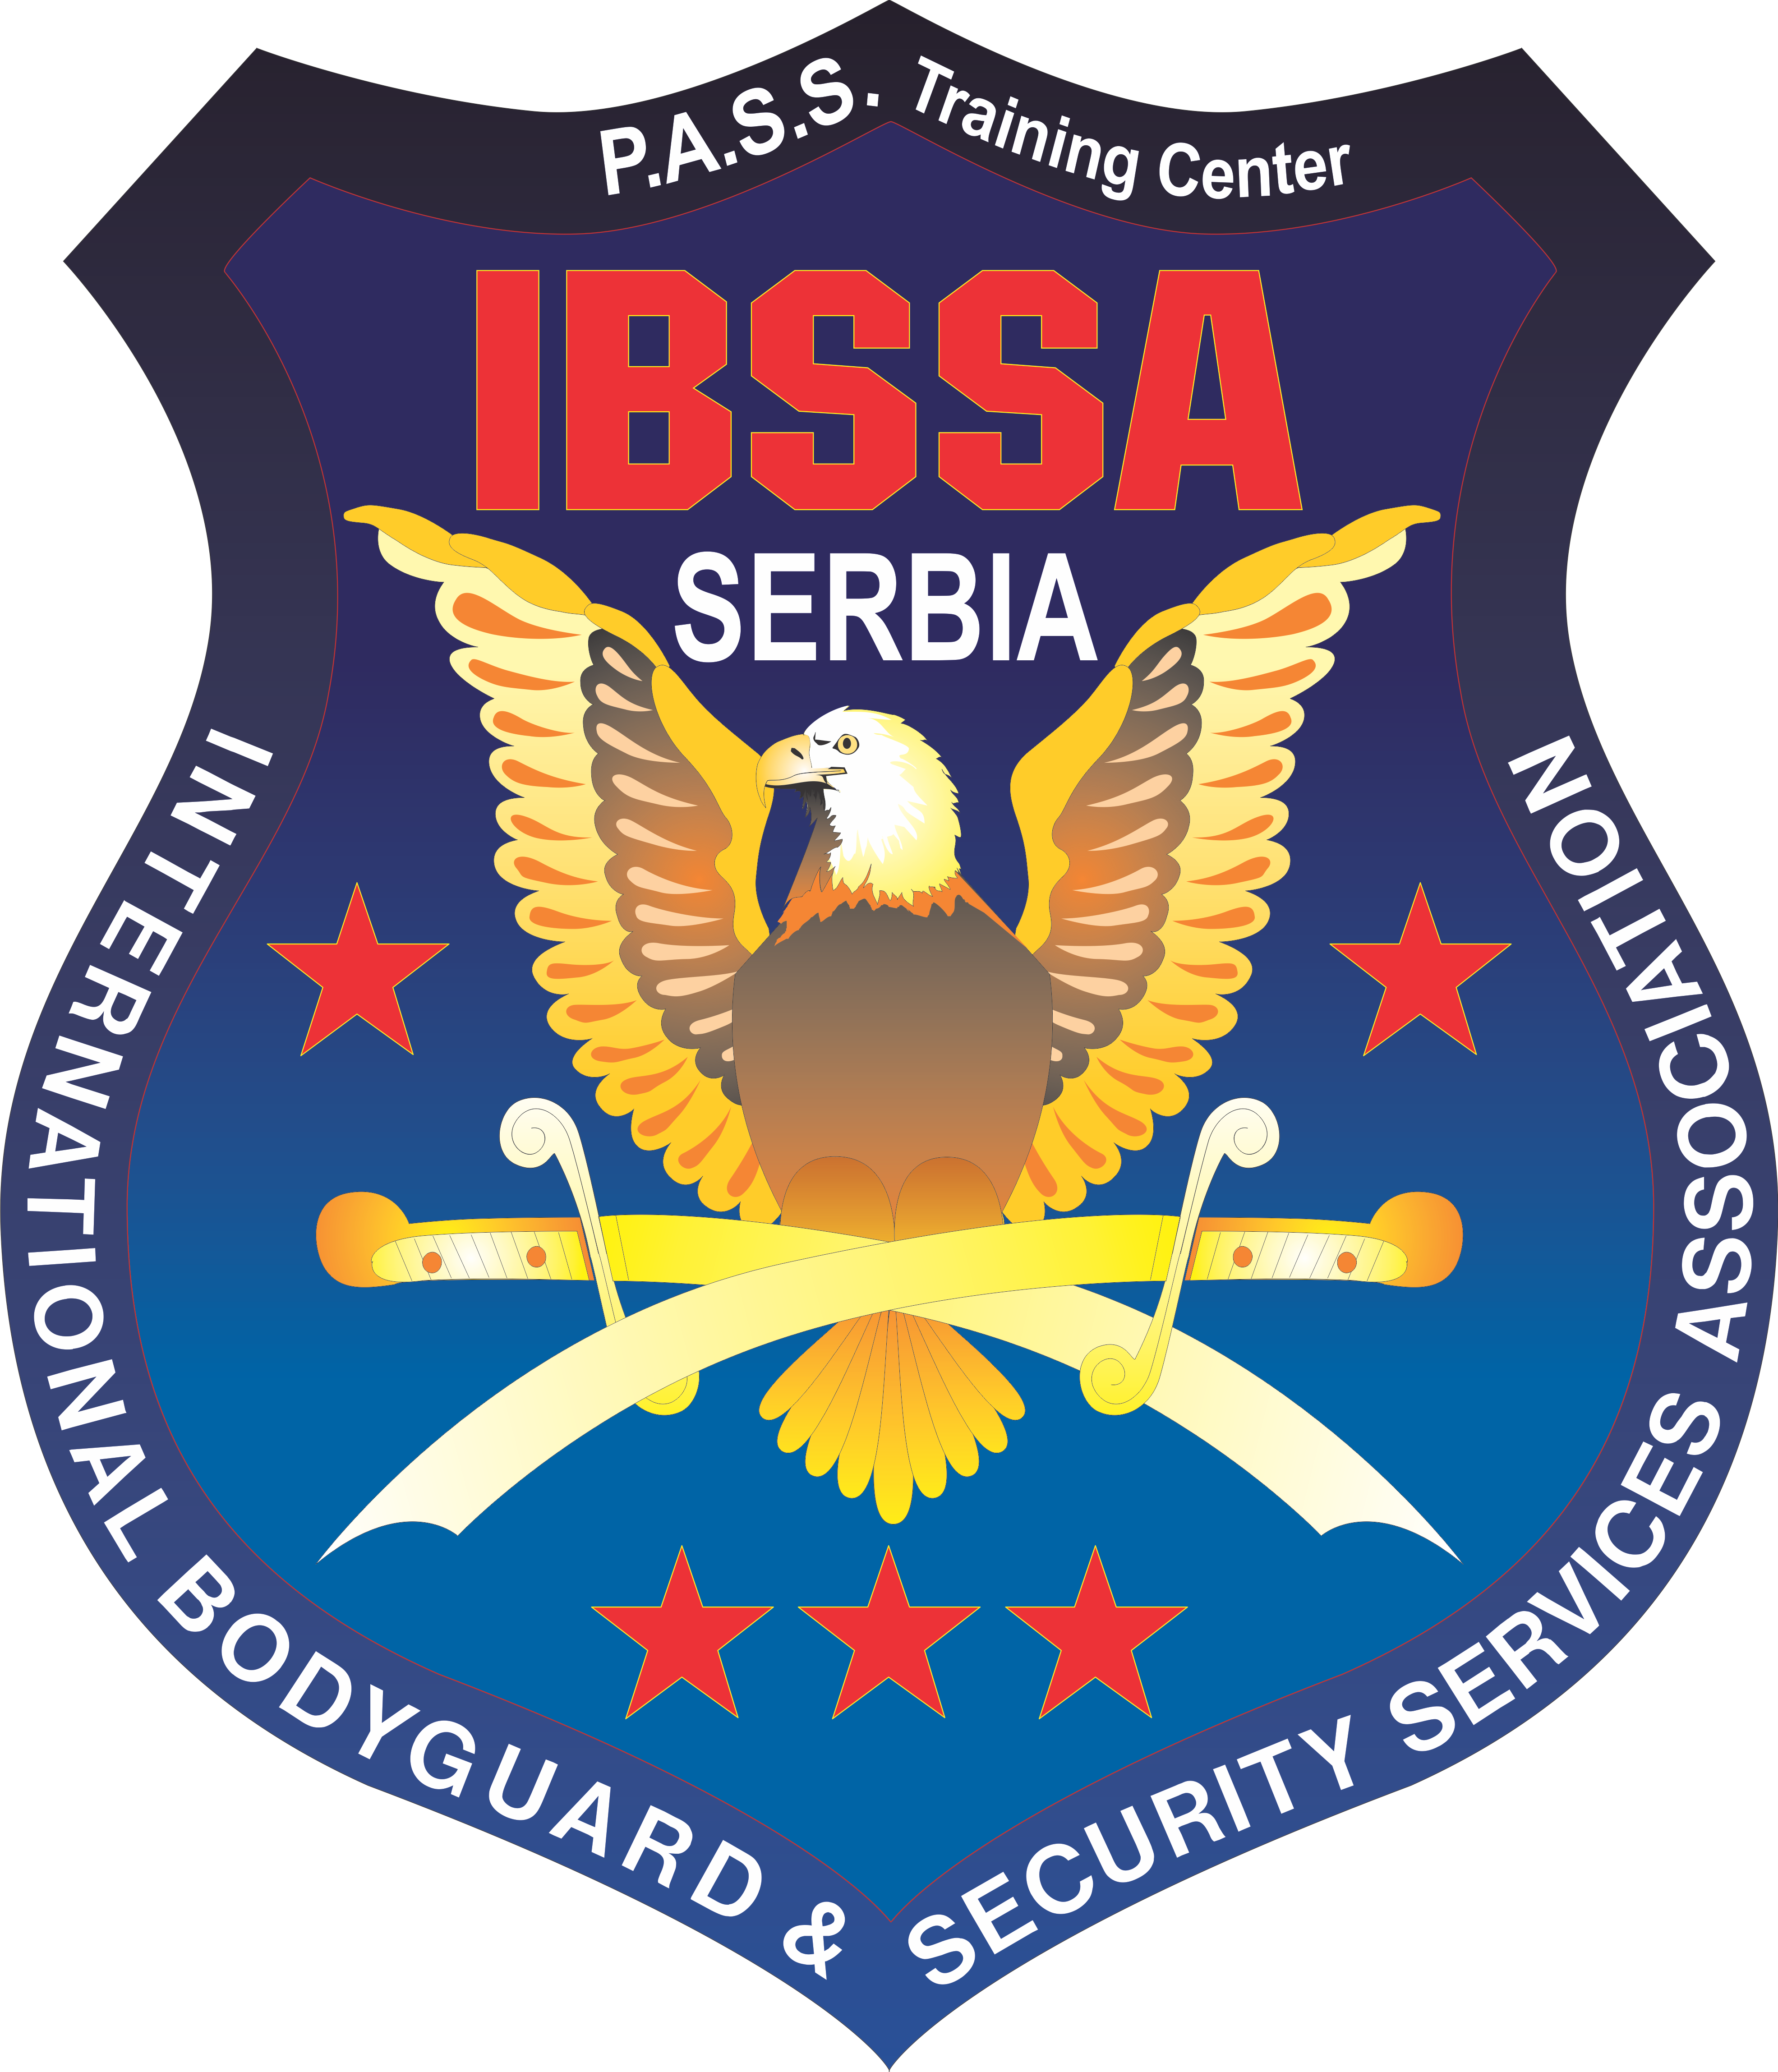 SUSB na 23. godišnjem Kongresu IBSSA i 8. međunarodnom Kongresu “Partnerstvo za bezbednost”